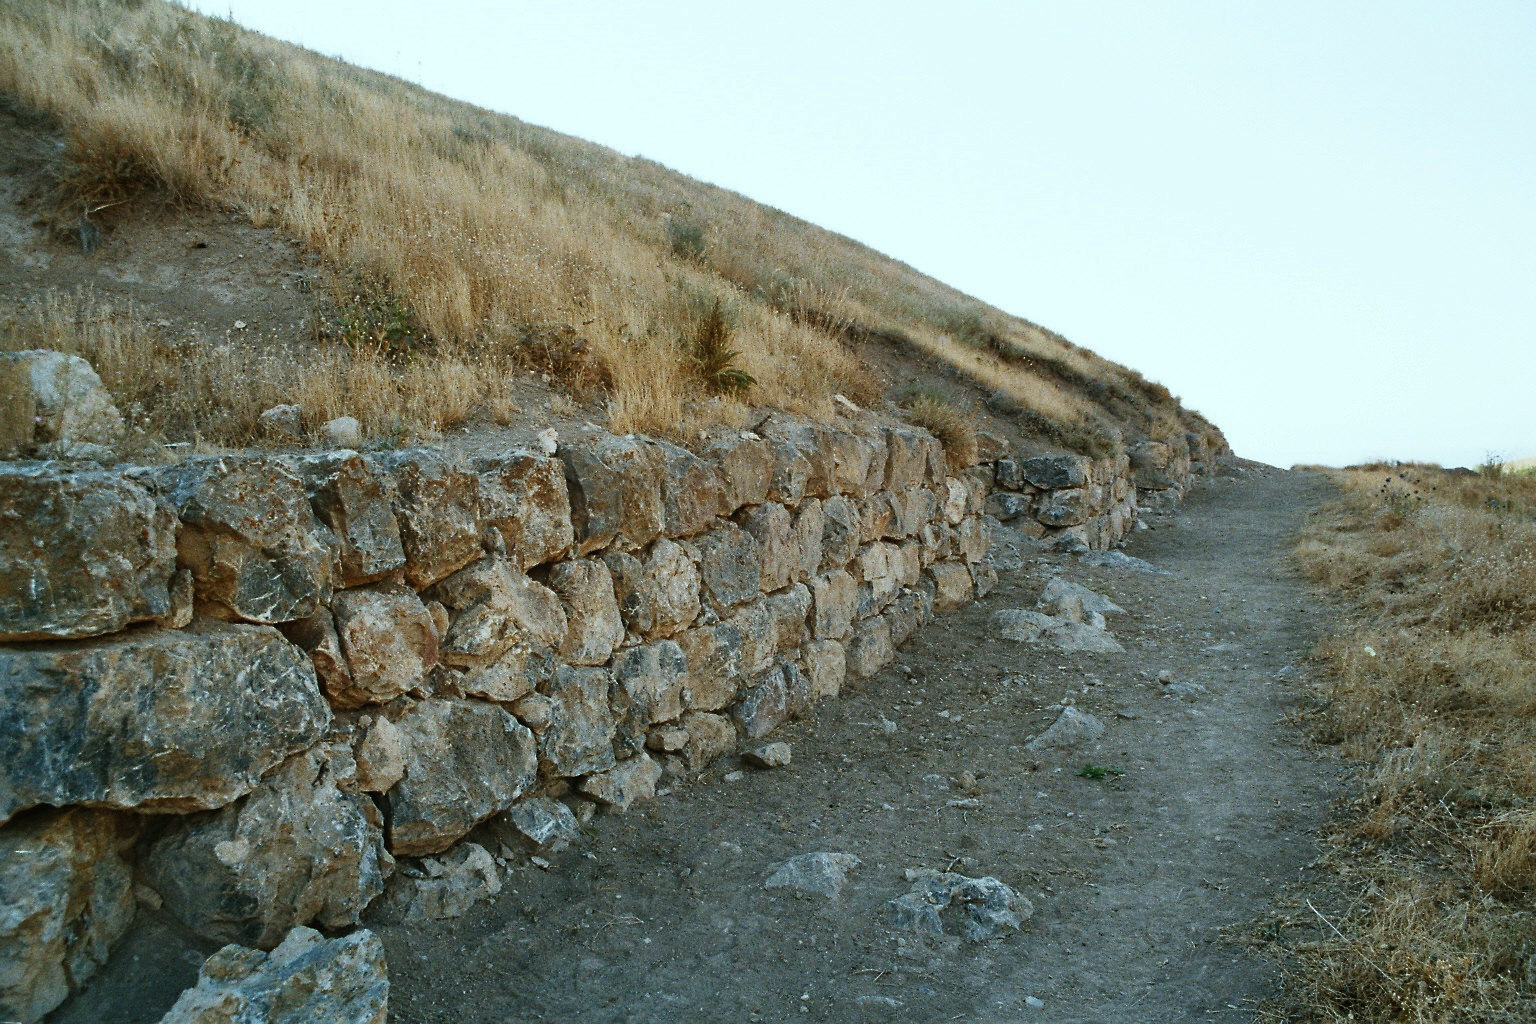 An den beiden Bildern kann man die Bauweise gut sehen. Basis bildete eine Fundament- bzw. Sockelmauer, die meist direkt auf dem behauenen Fels errichtet war.